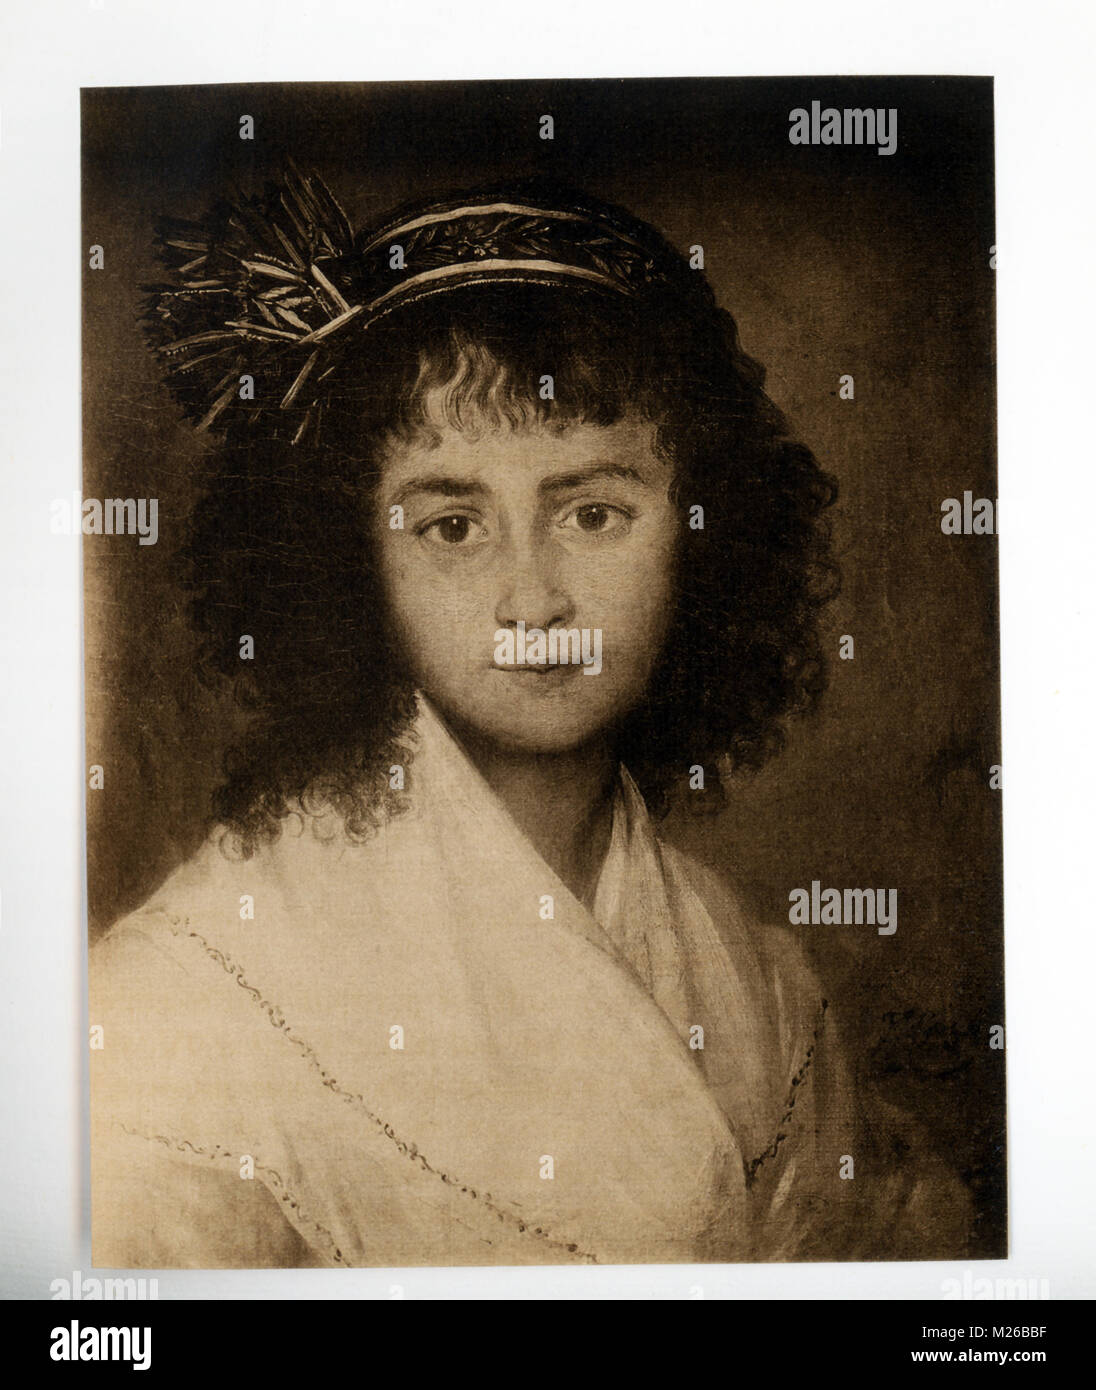 Francisco Goya (1746-1828) était un peintre et graveur espagnol. Considéré comme le plus important des artistes espagnols de l'époque, il est honoré comme l'un des derniers de l'art ancien et l'un des premiers des modernes. Ses premières peintures étaient optimistes et Jolly, au fil des ans, ses œuvres sont devenues très pessimiste. Un peintre, Goya n'a ce portrait d'une jeune fille espagnole. Banque D'Images